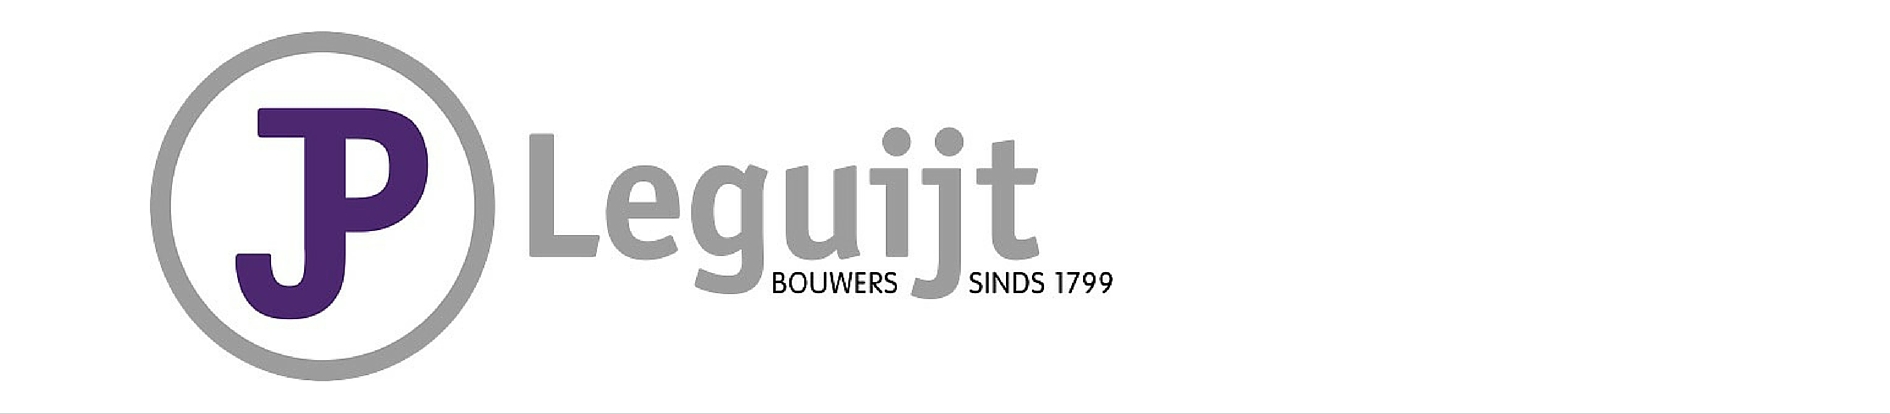 Moderner en nieuw logo bouwbedrijf JP Leguijt